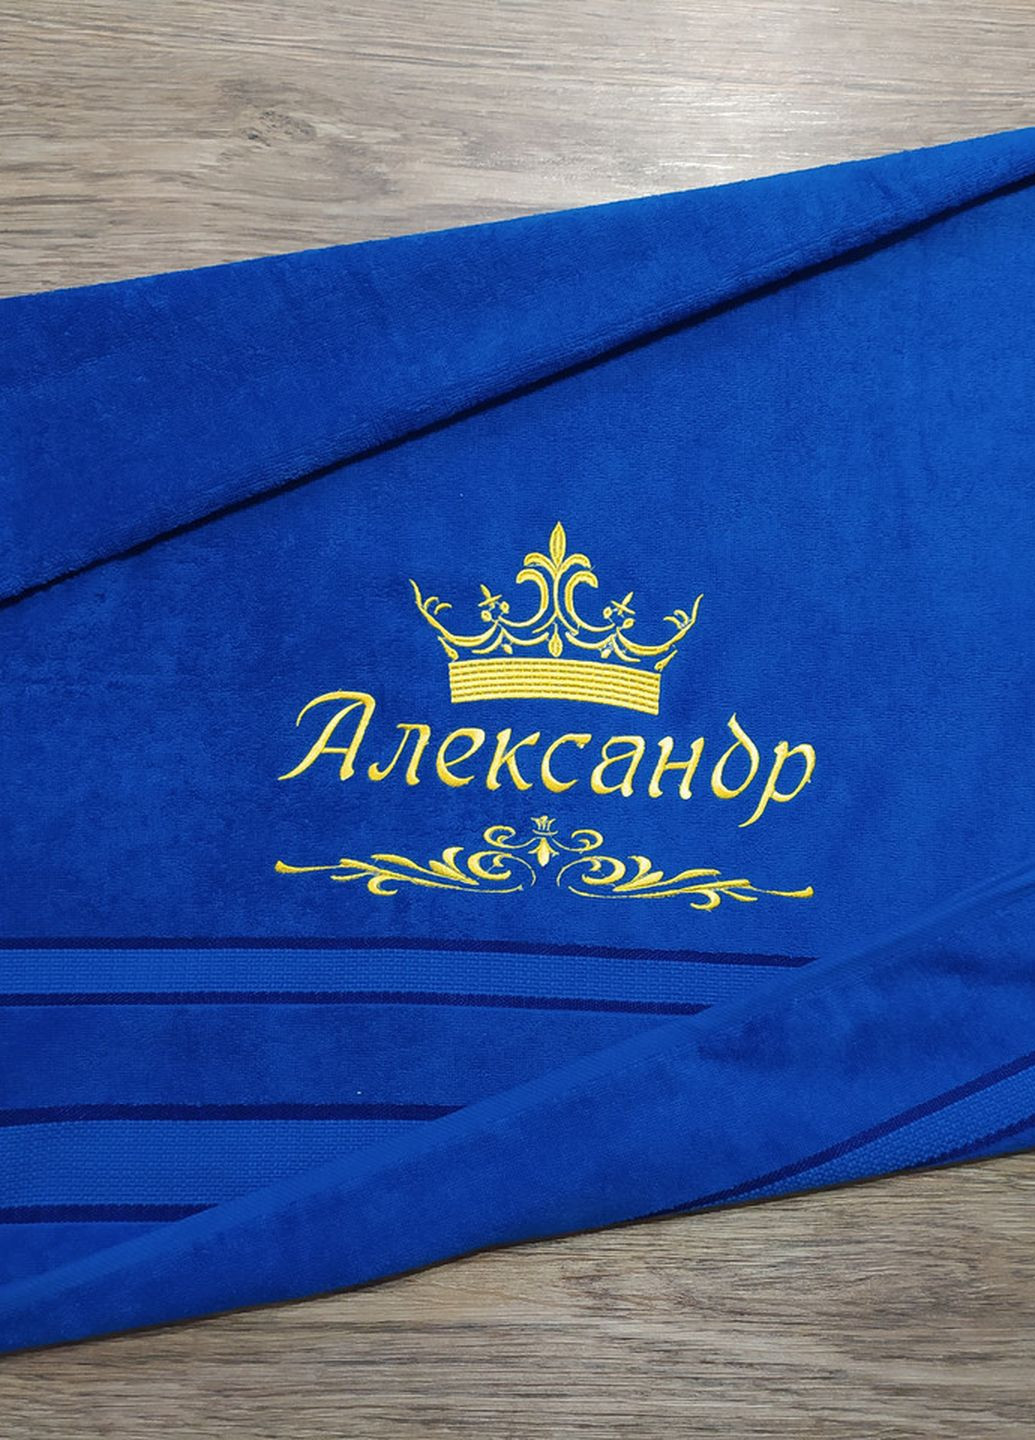 No Brand полотенце с именной вышивкой махровое банное 70*140 синий александр 04250 однотонный синий производство - Украина